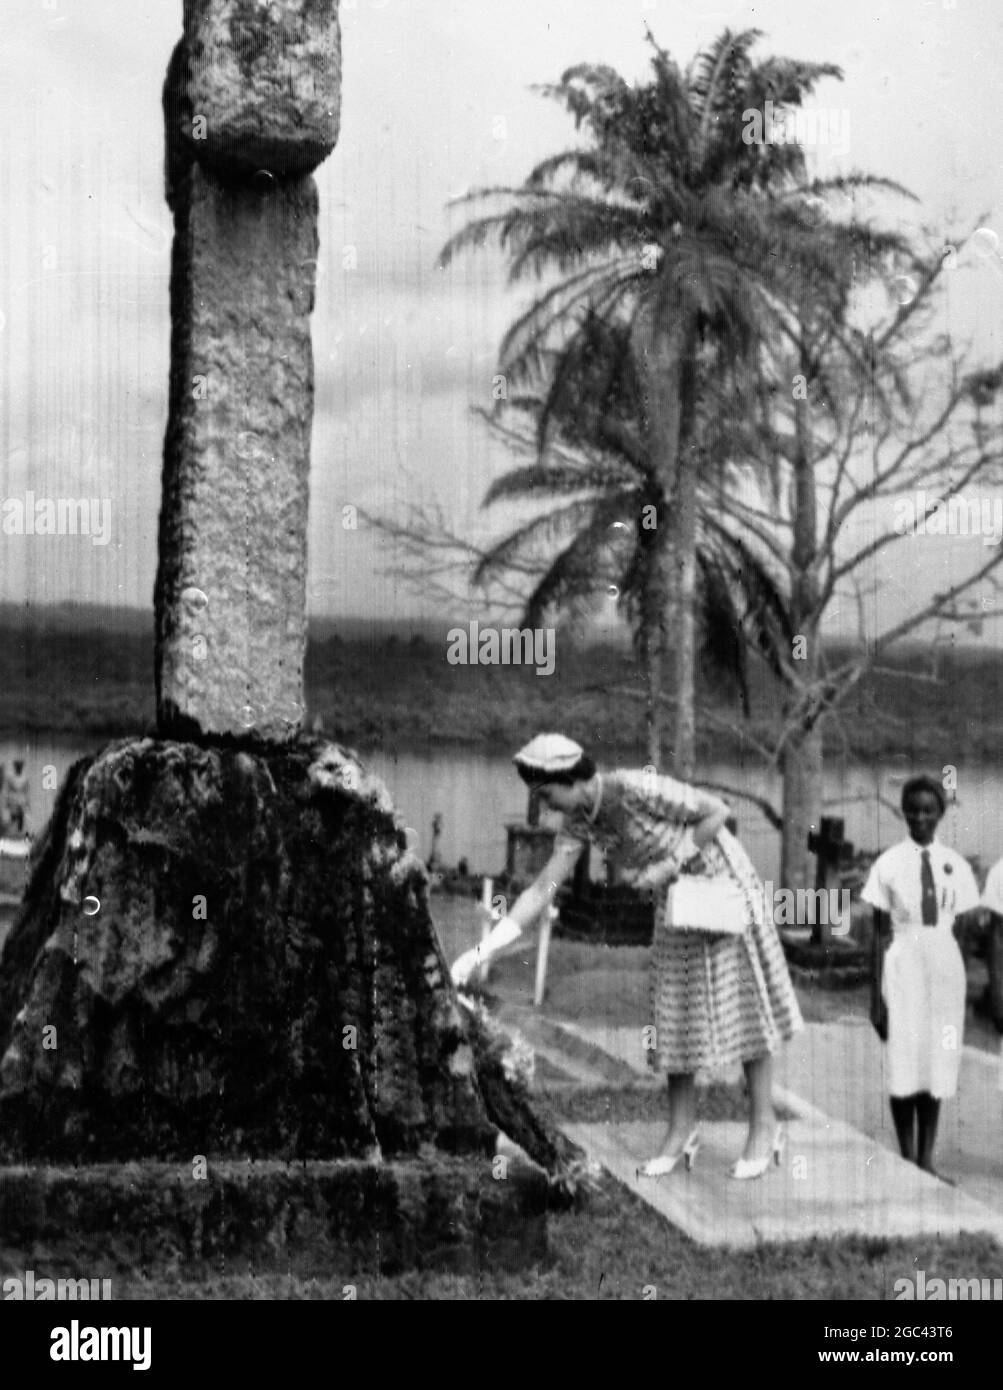 Calabar, Nigeria de l'est : la Reine place une couronne sous la pierre tombale de granit d'Aberdeen de 15 pieds de haut de Mary Slouor - une fille de moulin de Dundee qui a lutté contre la maladie, la pauvreté et l'ignorance en tant que missionnaire calabar pendant 37 ans. Mlle Slouor est décédée d'une maladie tropicale à l'âge de 67 ans. 9 février 1956 Banque D'Images